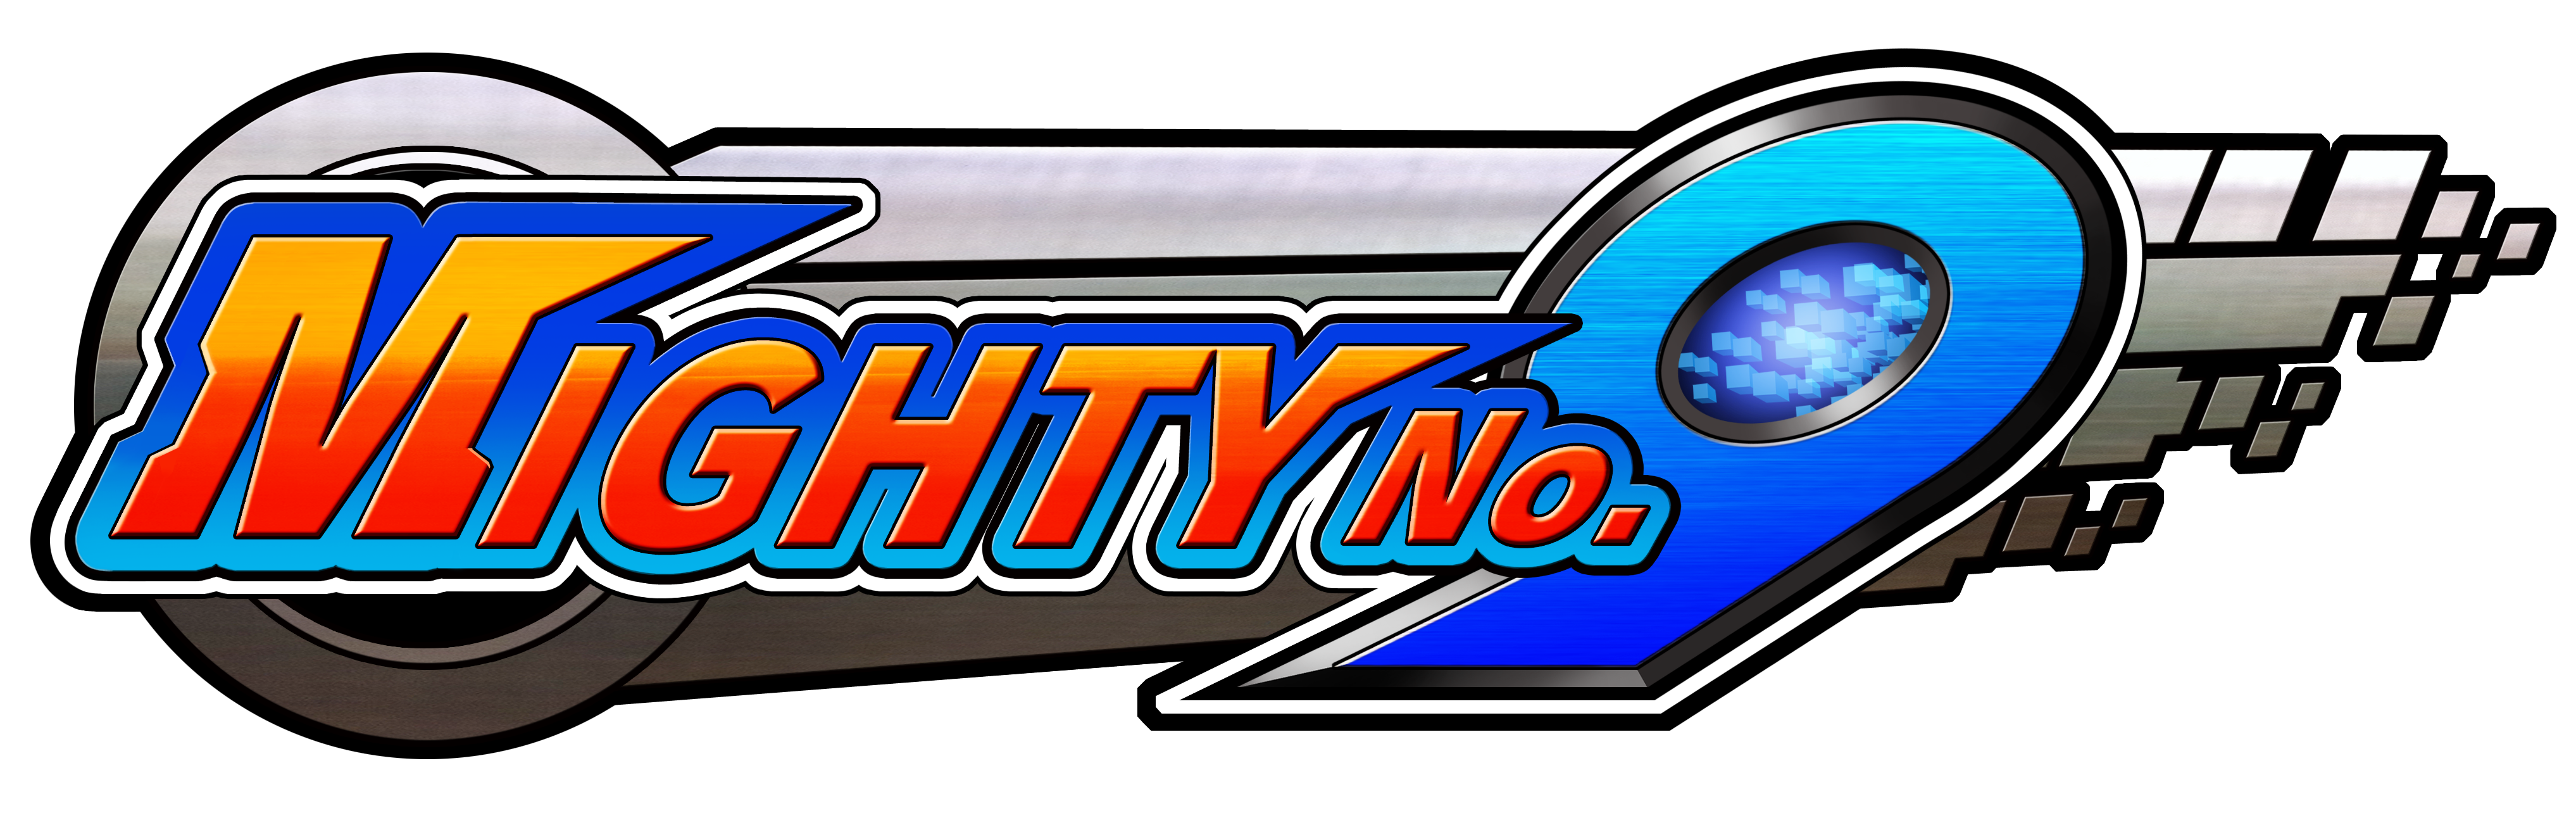 Mighty No 9_logo_brush Up1015